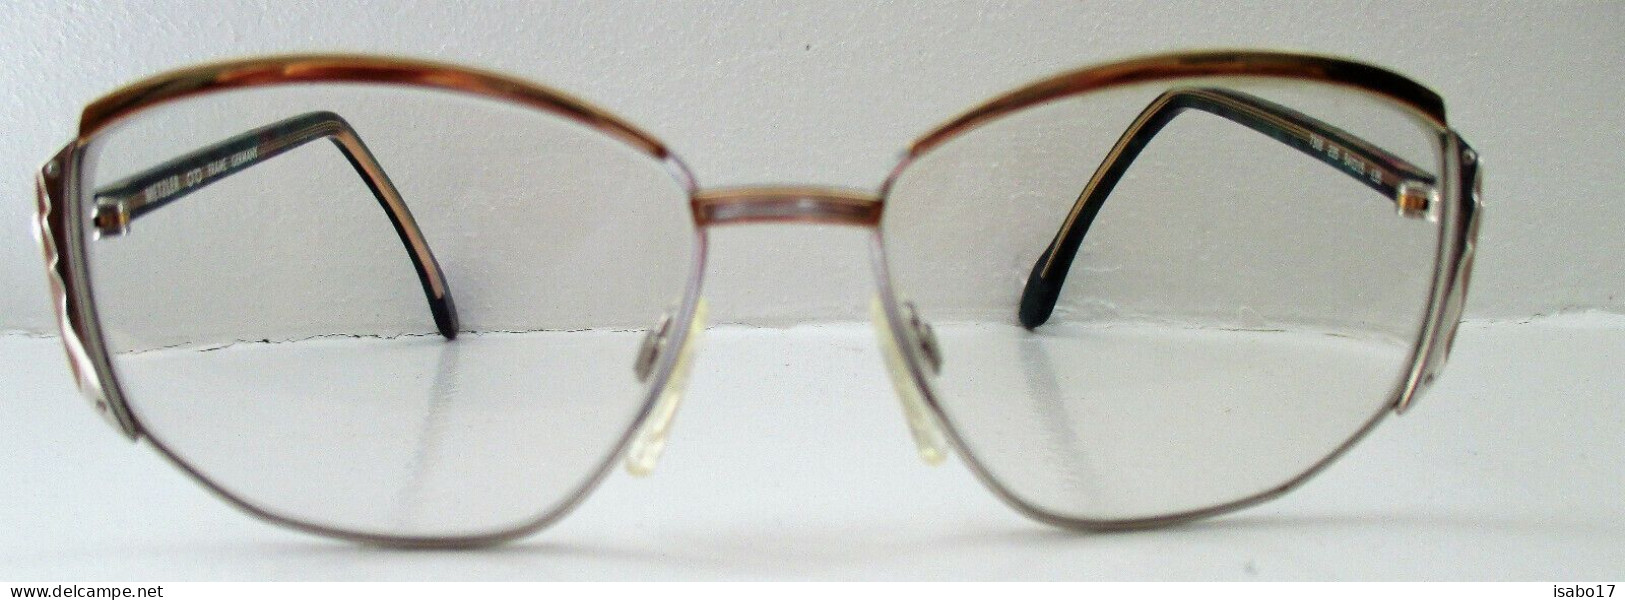 Vintage Eckig Damen-Brillengestell Metzler Germany Modell 7308 235 135 - Glasses